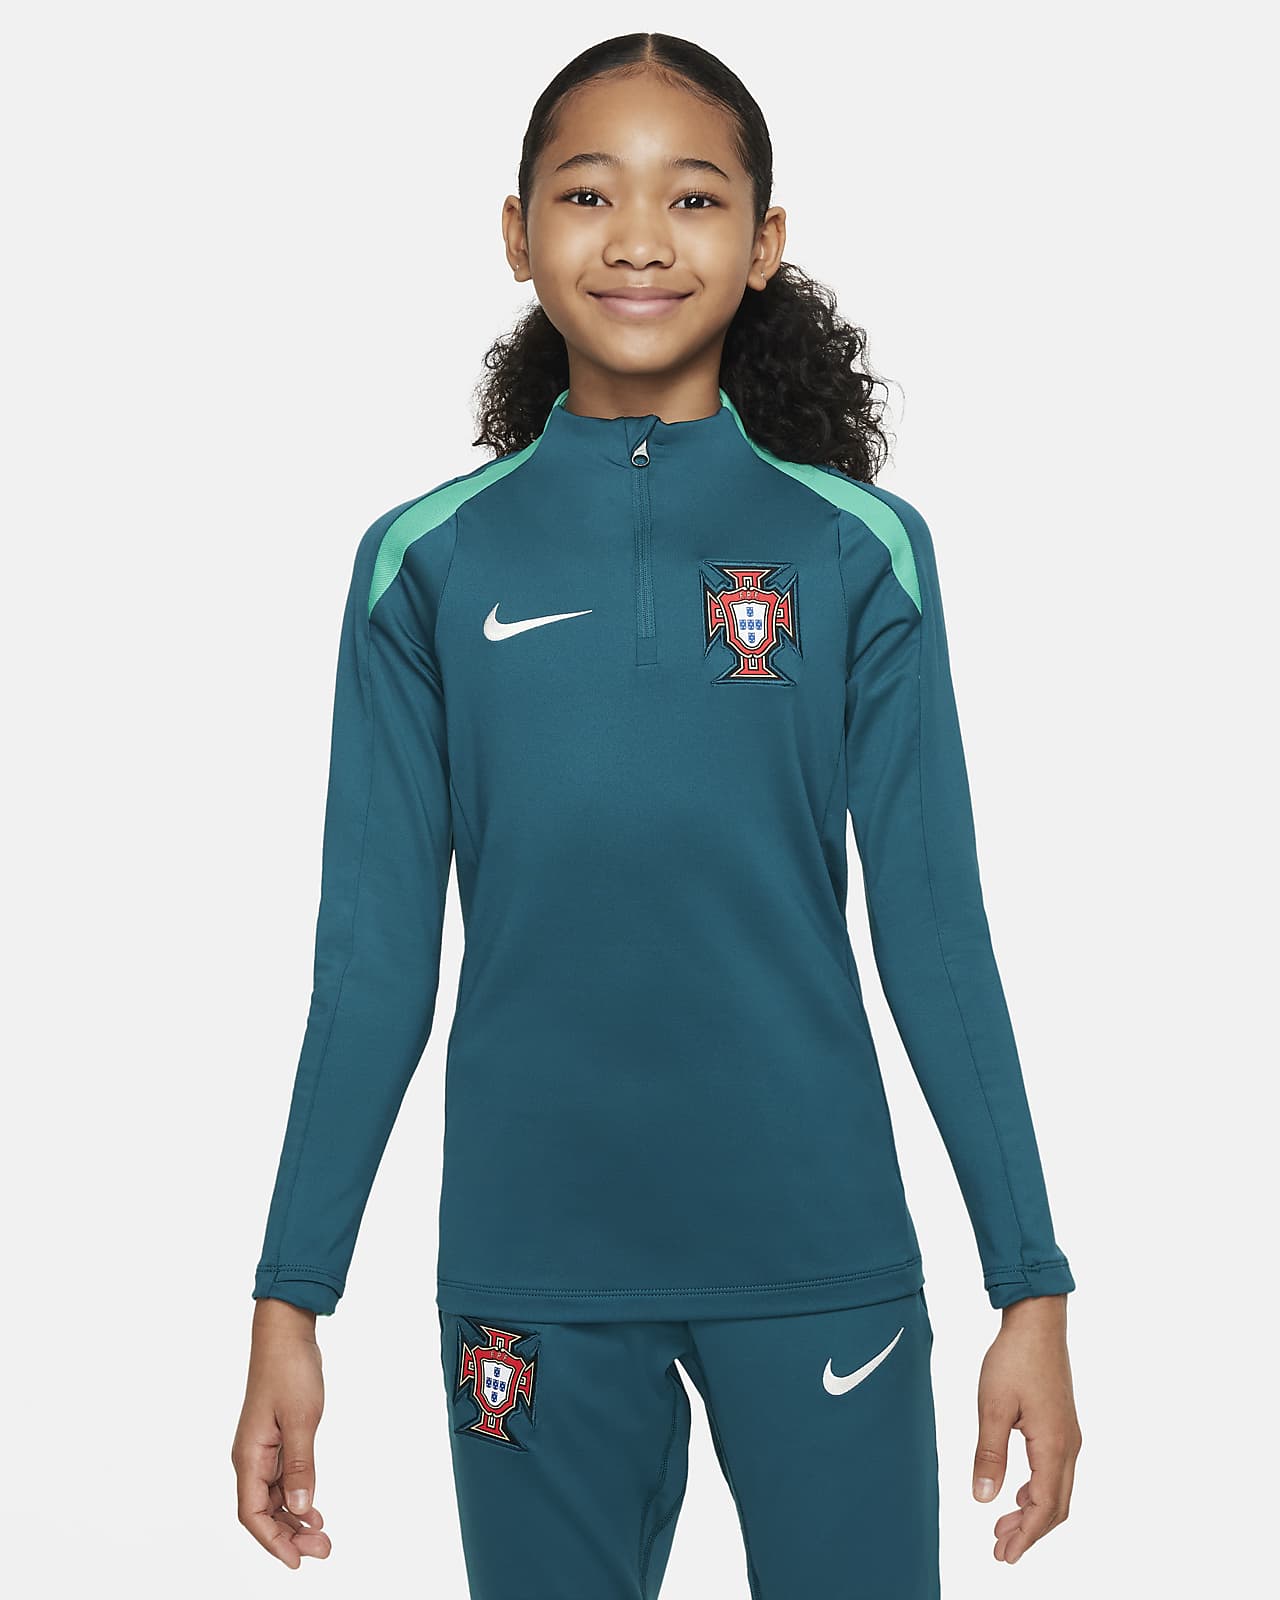 Ποδοσφαιρική μπλούζα προπόνησης Nike Dri-FIT Πορτογαλία Strike για μεγάλα παιδιά